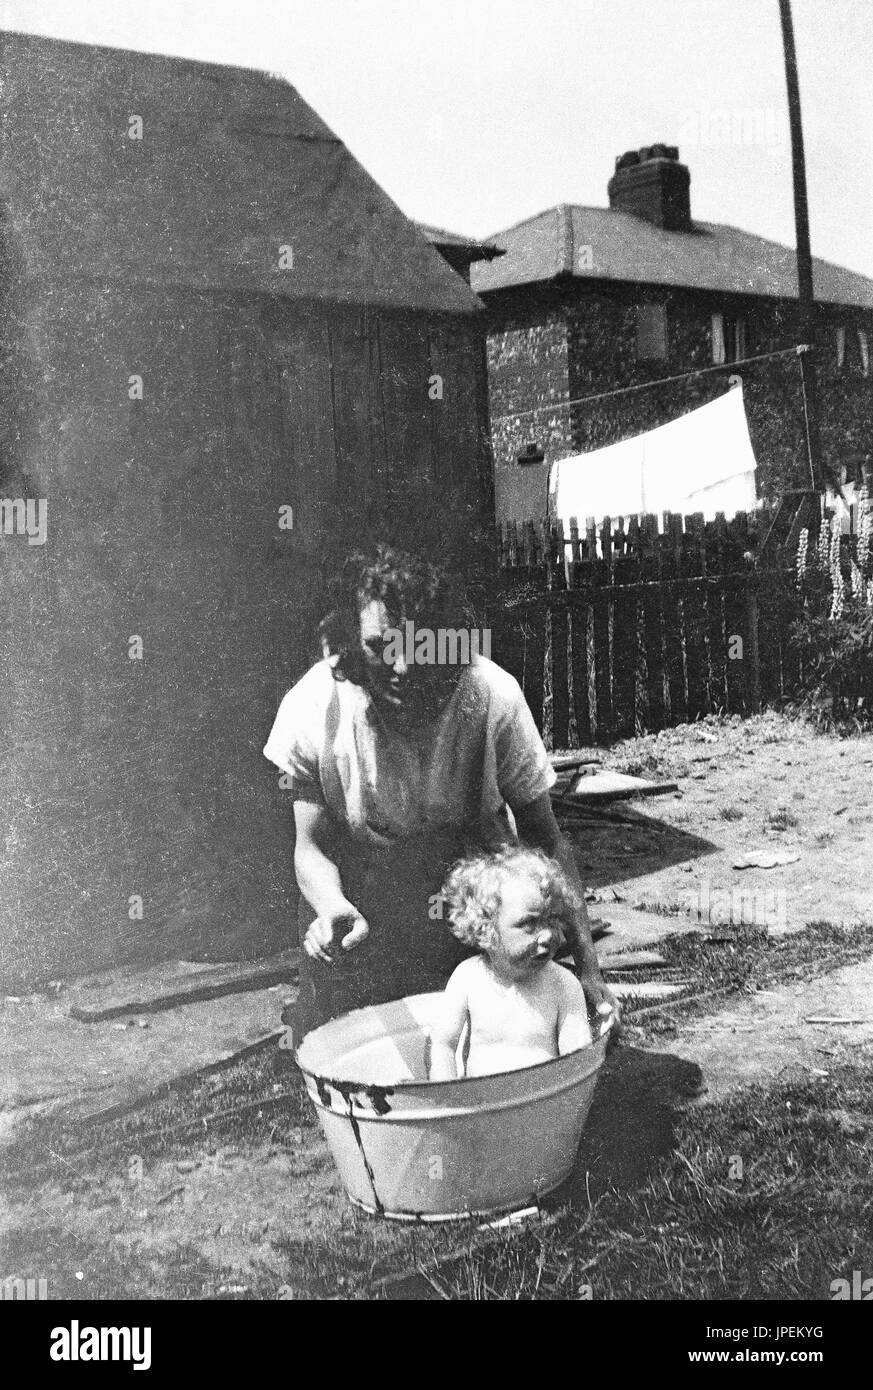 Années 1930, l'Angleterre, l'heure du bain, maman avec bébé assis dans une baignoire d'un seau de métal à l'extérieur. Banque D'Images